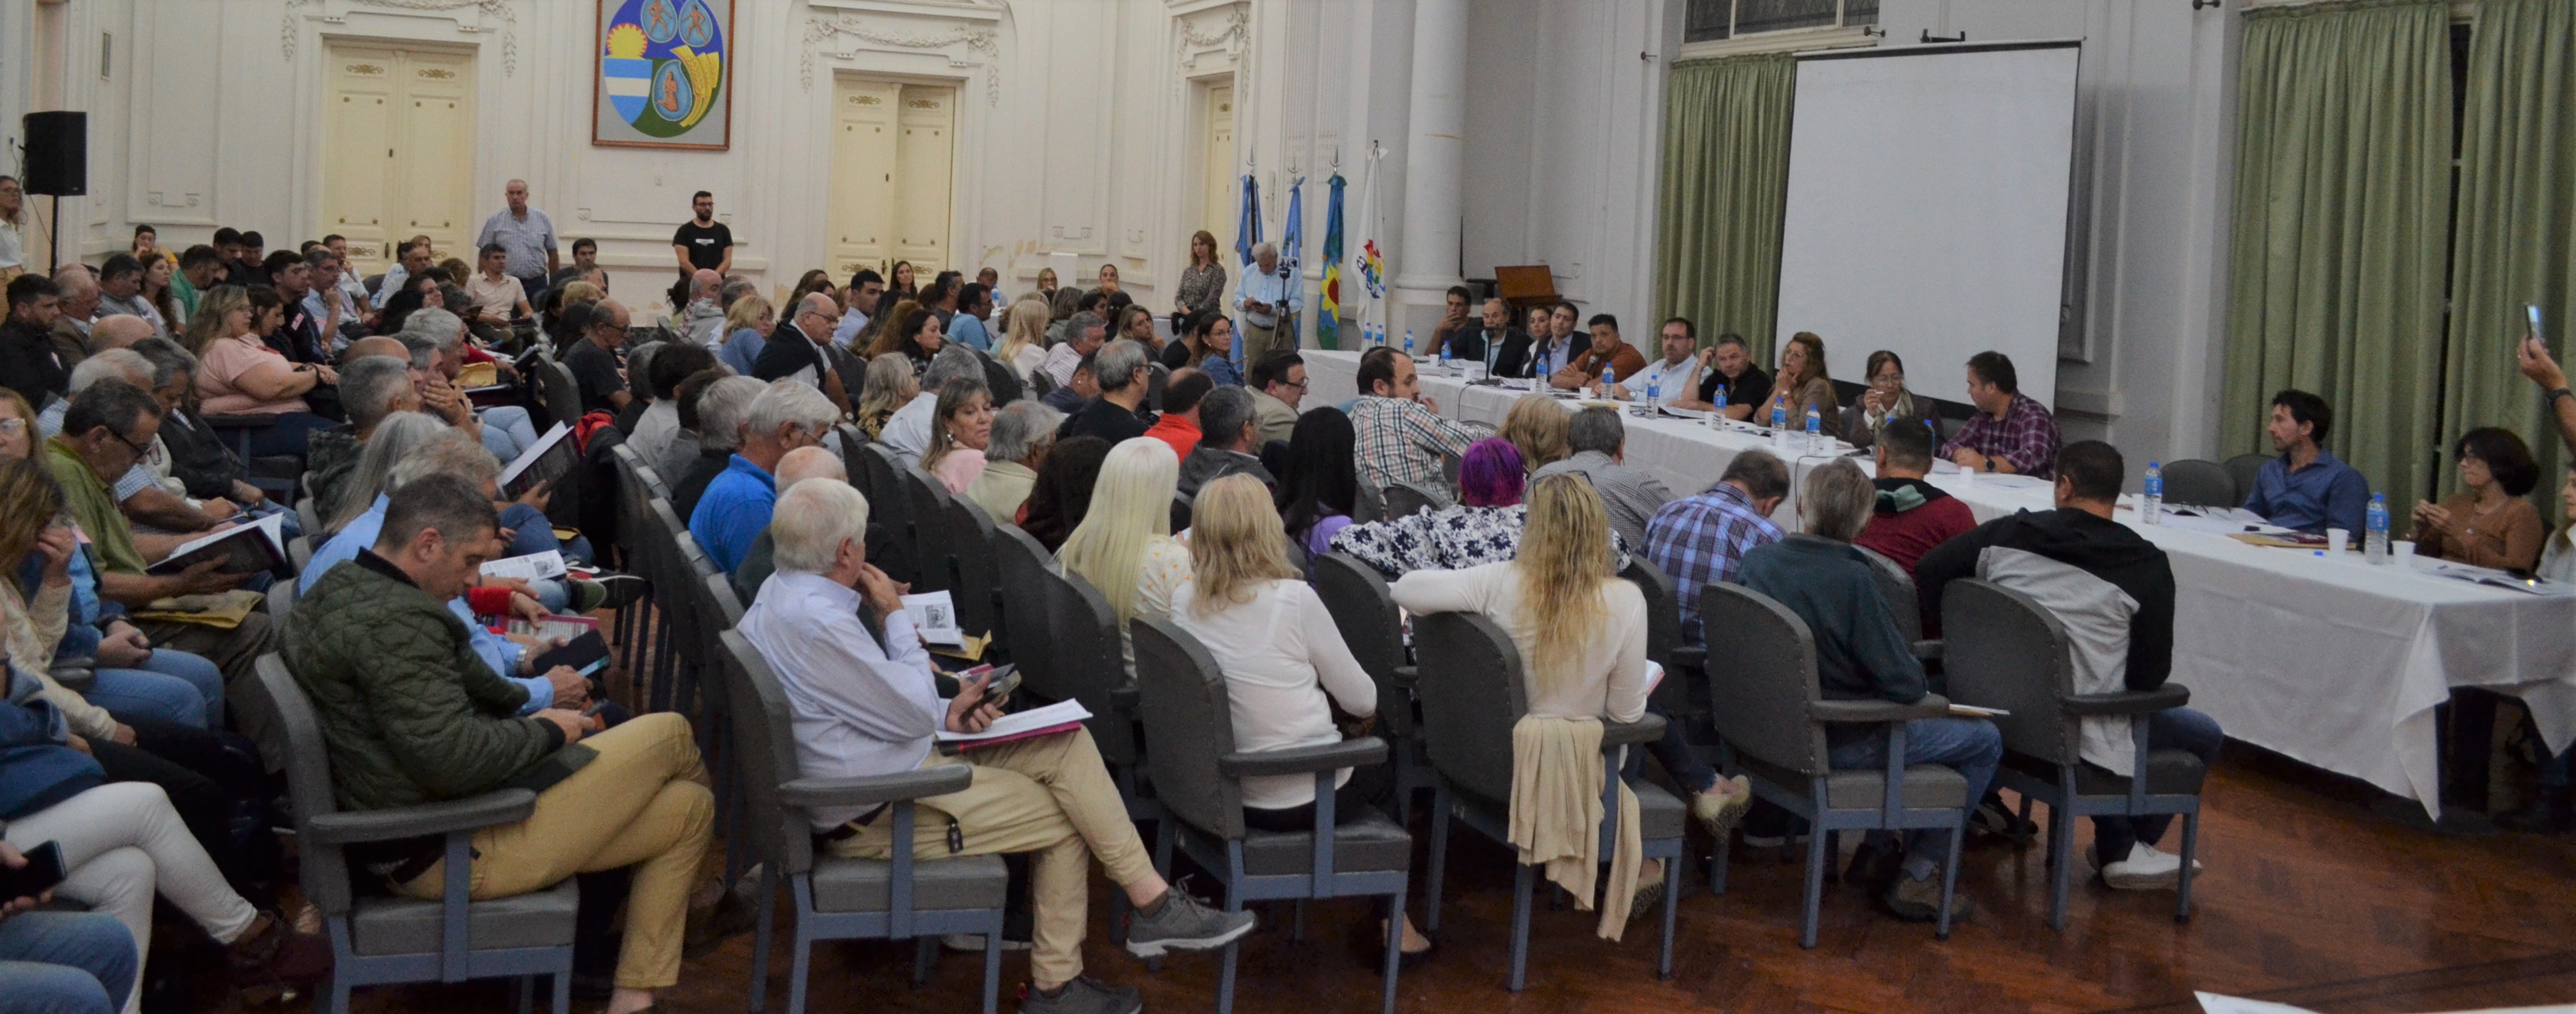 La CEyS Mariano Moreno desarrolla esta noche su Asamblea Anual Ordinaria en el Salon Blanco municipal